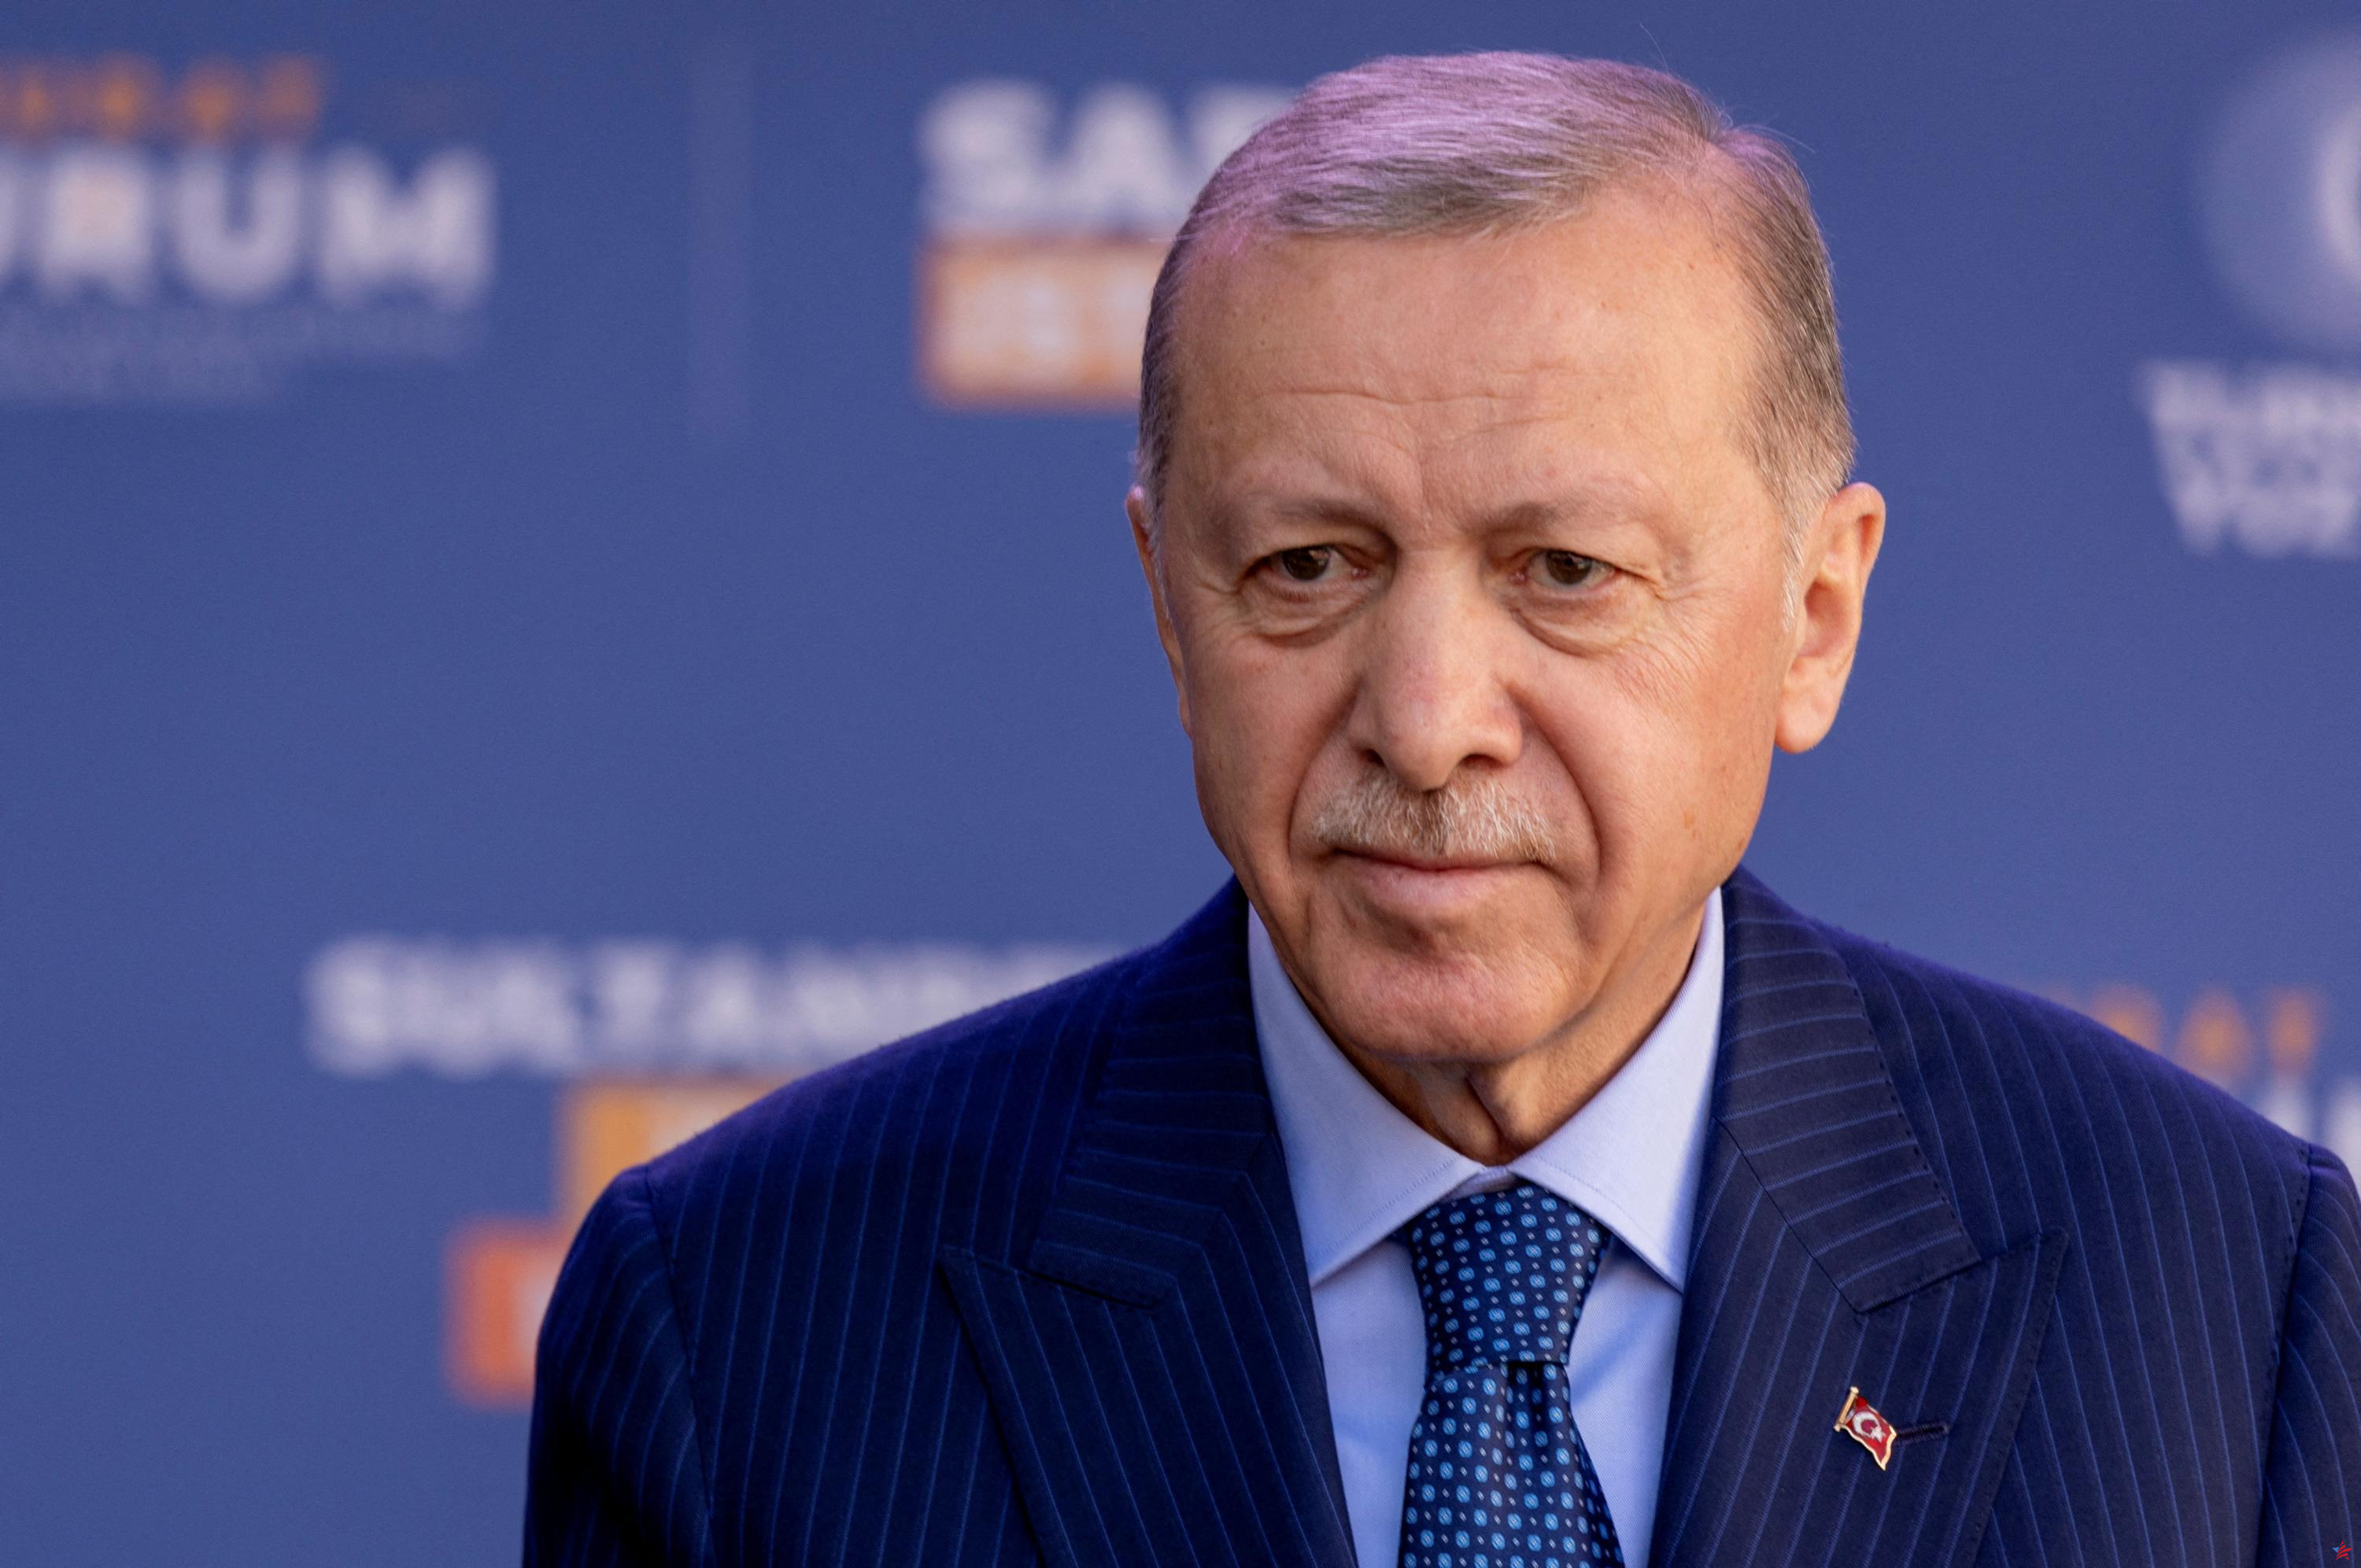 Agua, petróleo, seguridad regional: el presidente turco Erdogan en Bagdad este lunes